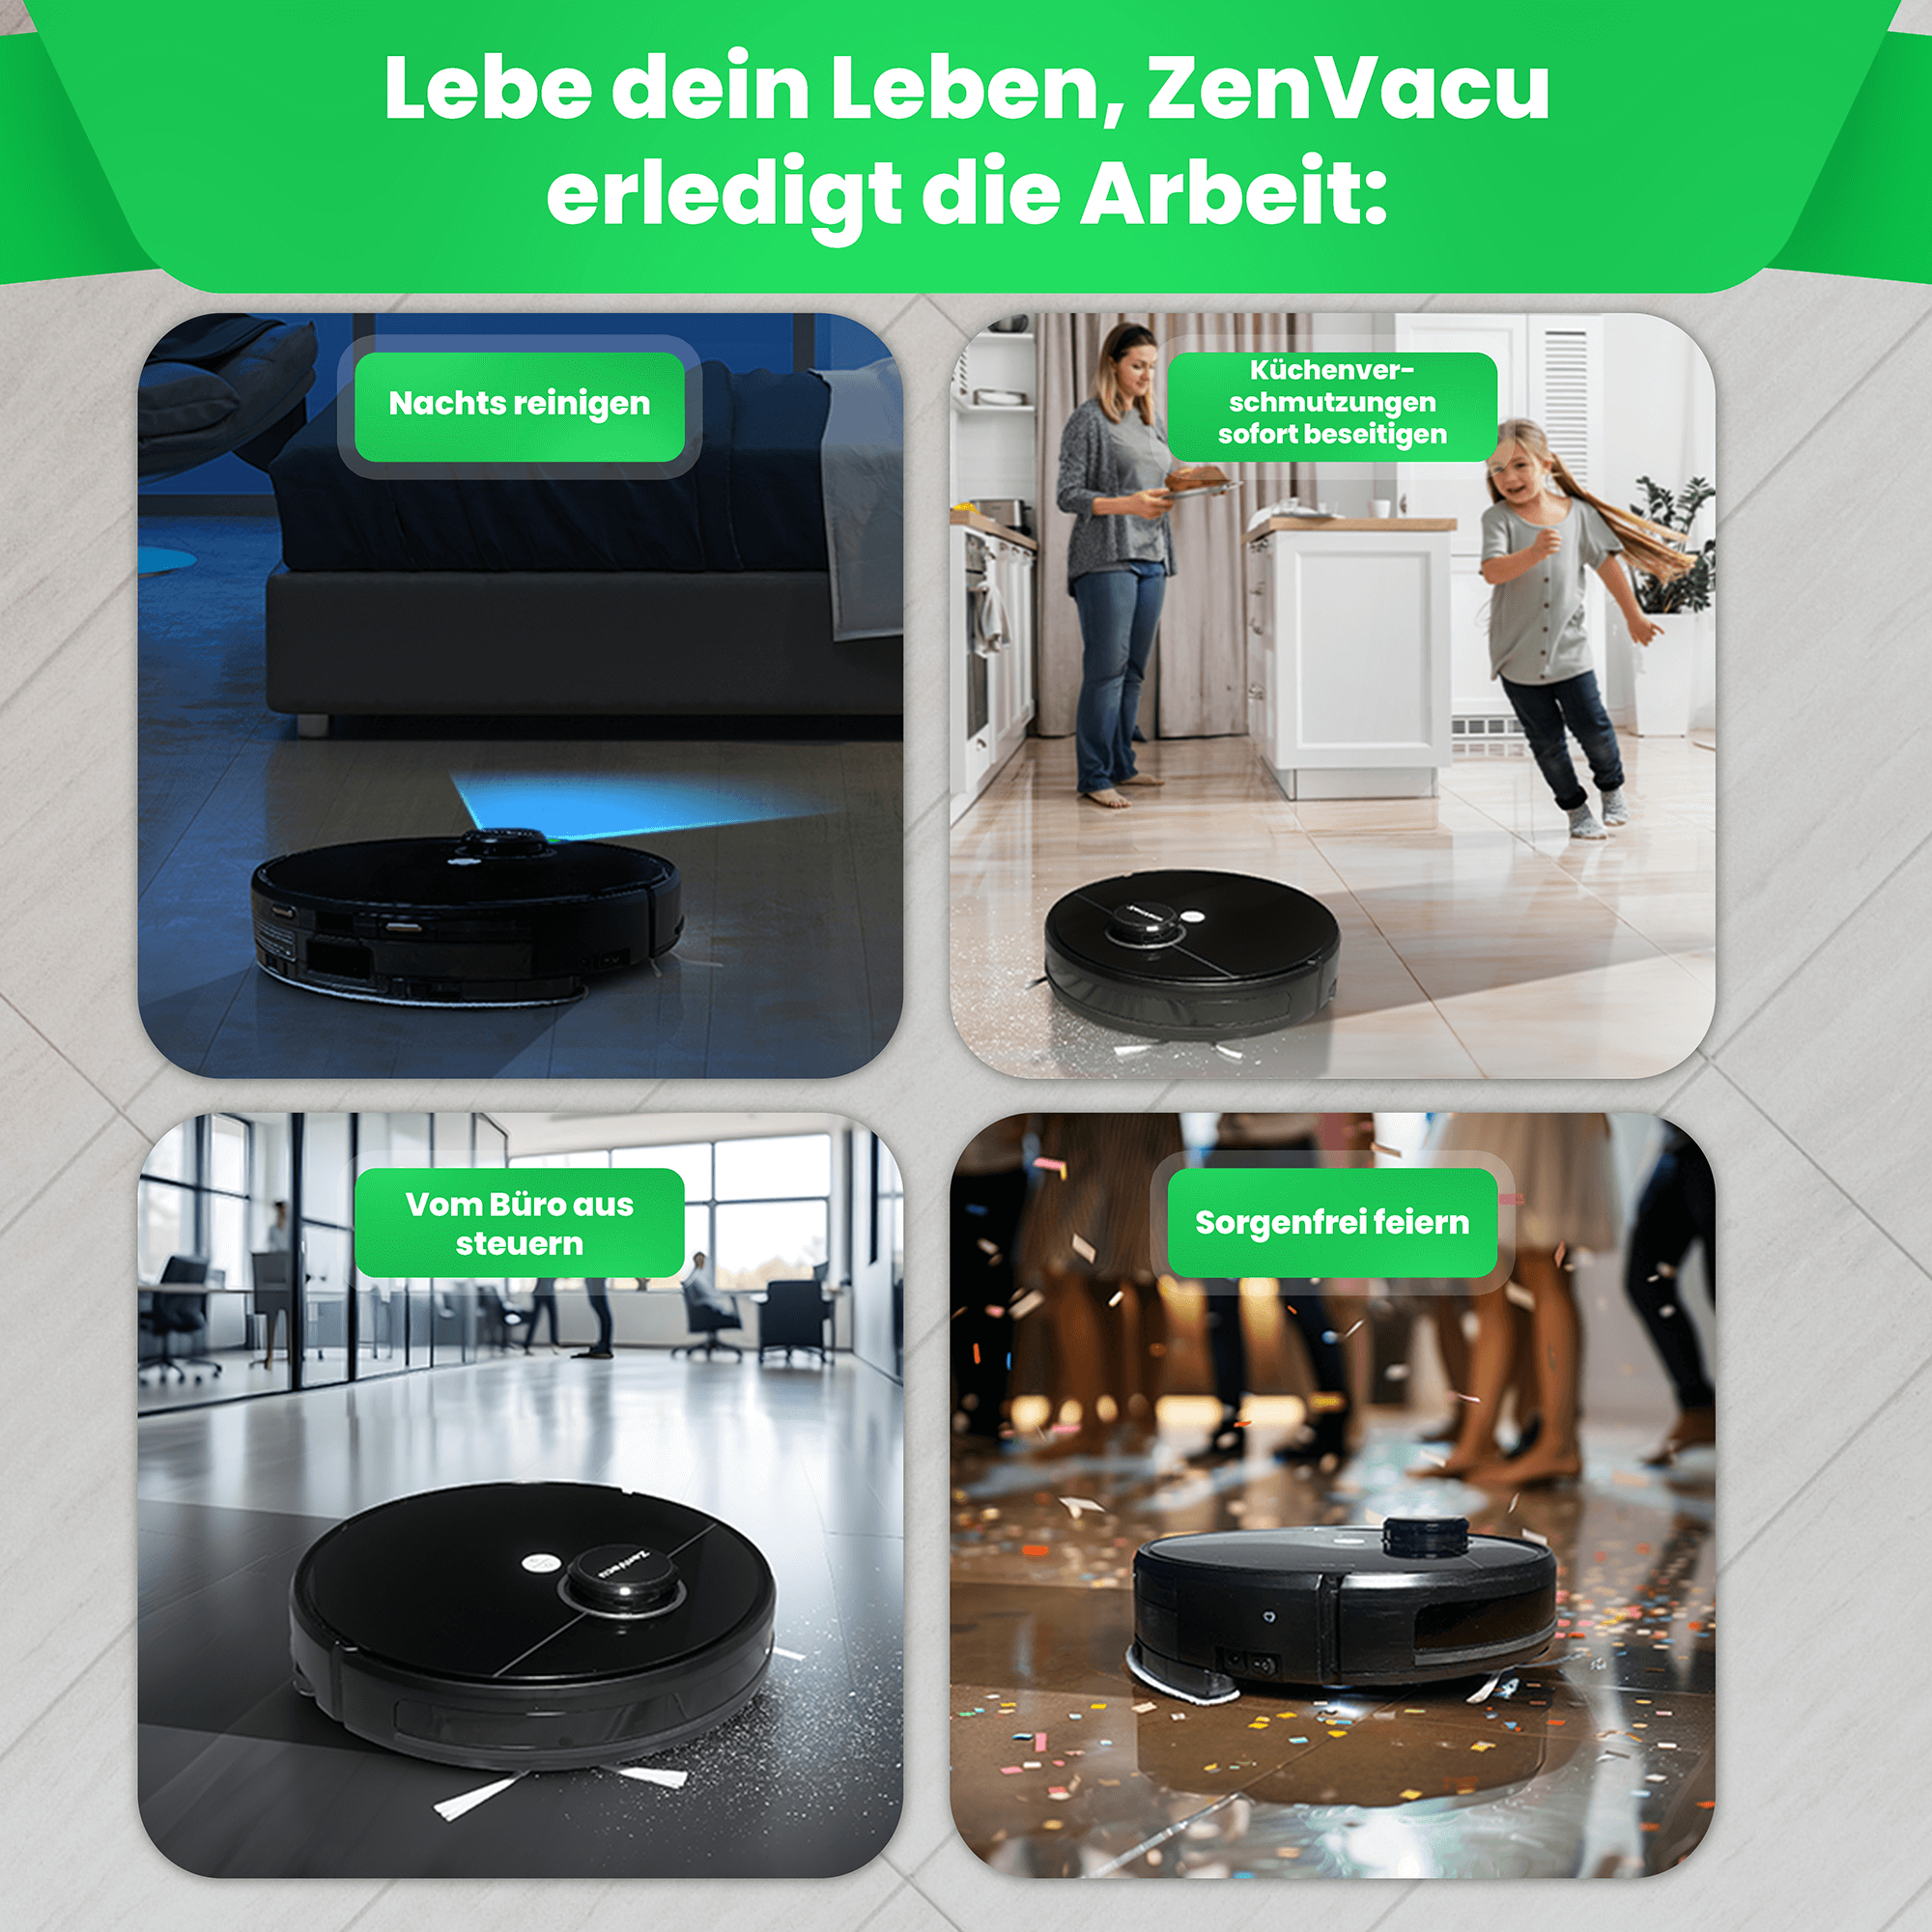 Lassen Sie ZenVacu die schwere Arbeit für Sie erledigen. Der G8 Pro ist vollautomatisch und übernimmt alle Reinigungsaufgaben, sodass Sie aufhören können zu putzen und Ihre Freizeit genießen können.